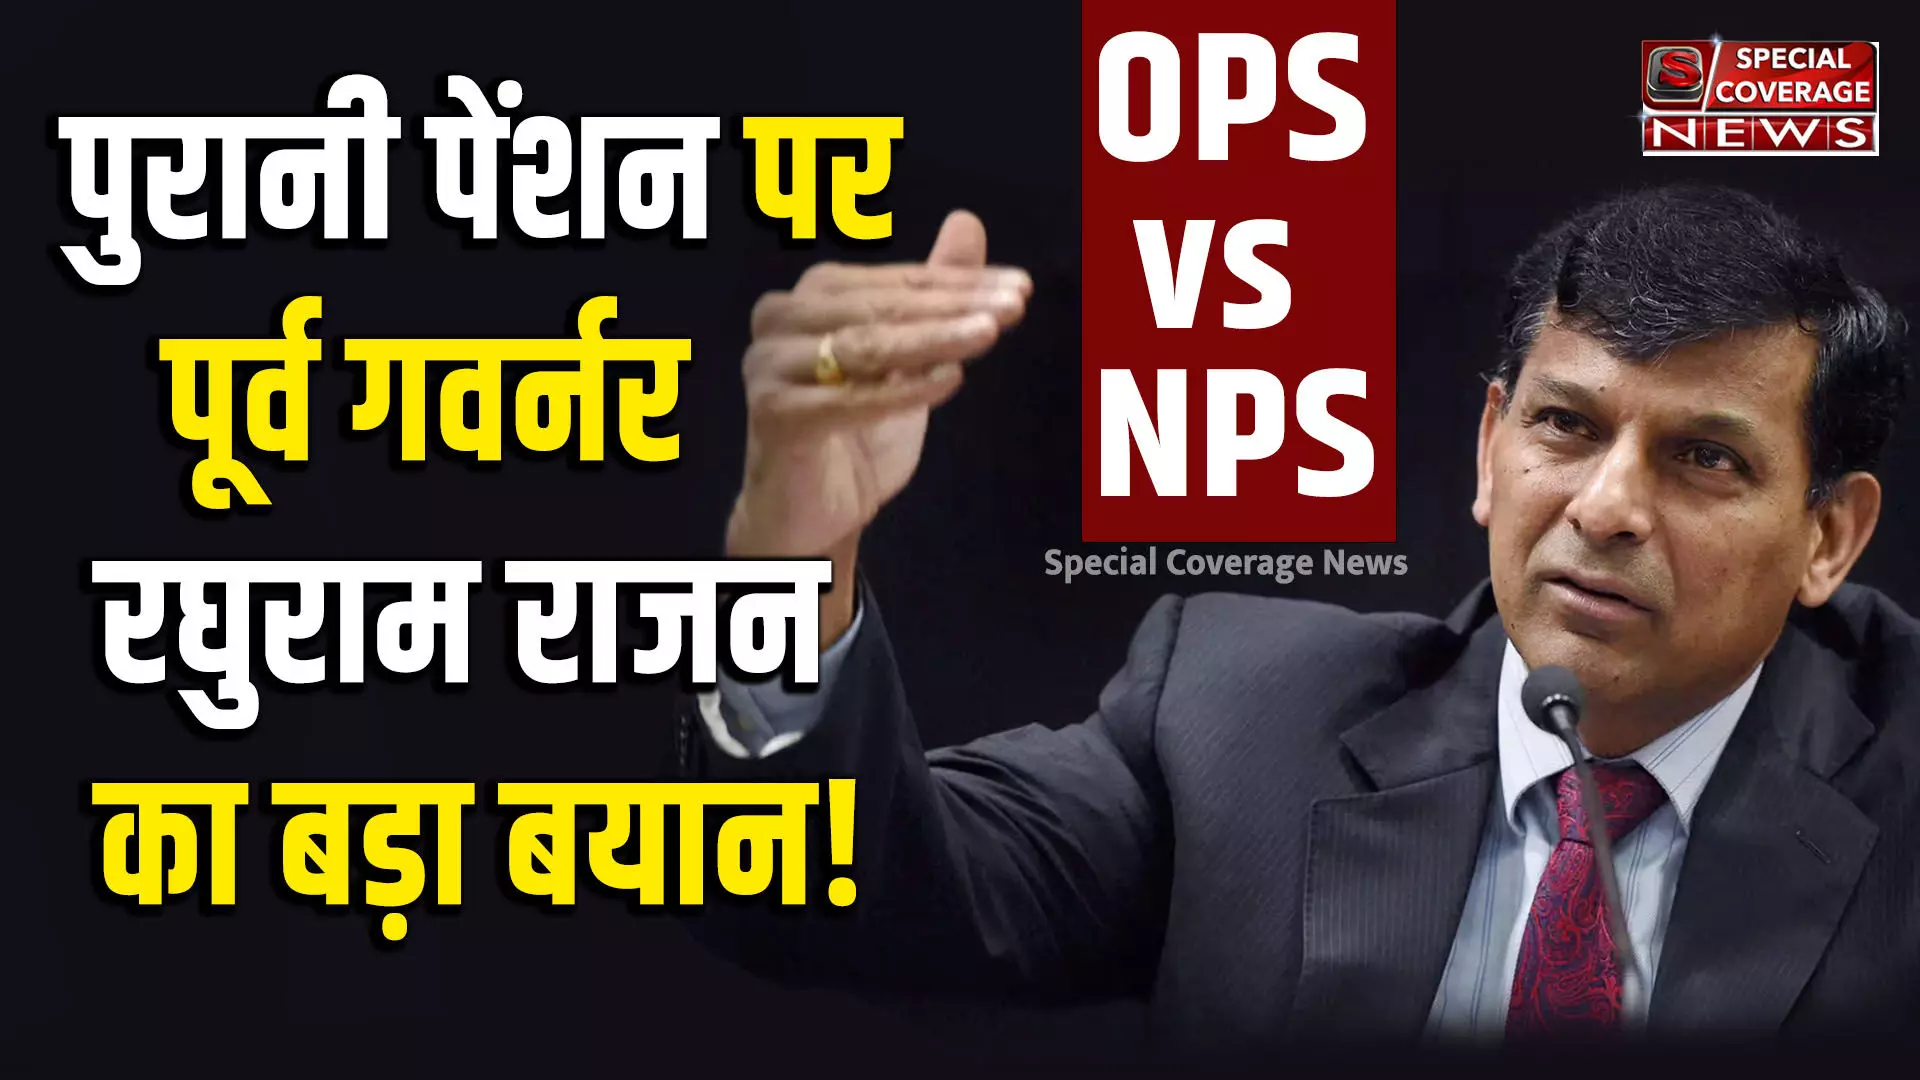 पुरानी पेंशन पर पूर्व RBI गवर्नर रघुराम राजन ने दिया बड़ा बयान, बताया सरकारी कर्मचारियों को OPS या NPS क्या सही?